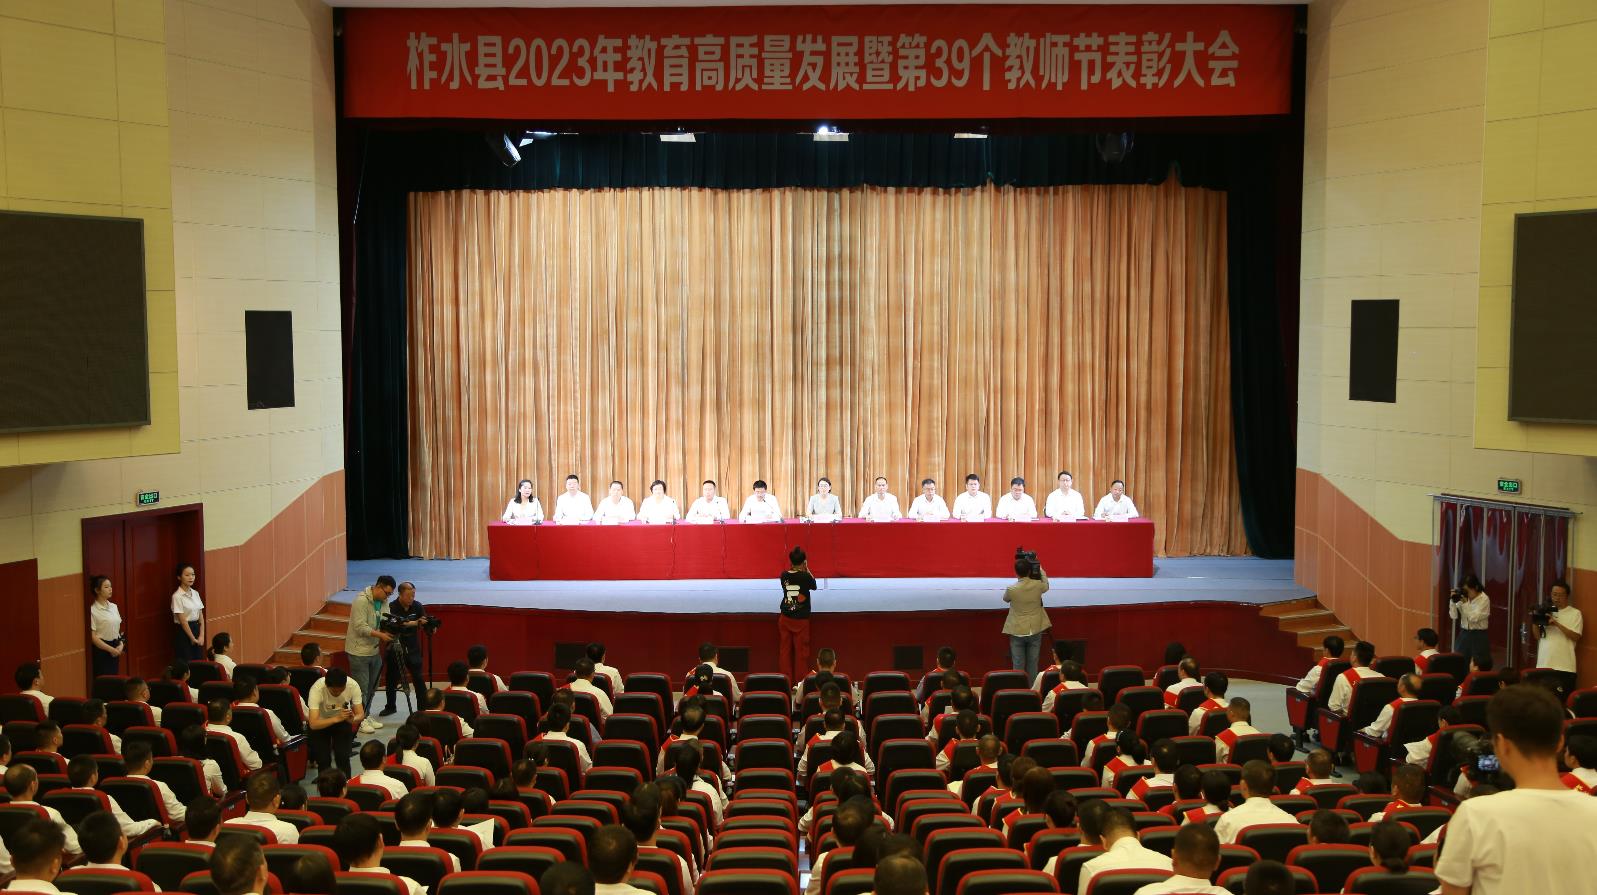 柞水县召开2023年教育高质量发展暨第39个教师节表彰大会